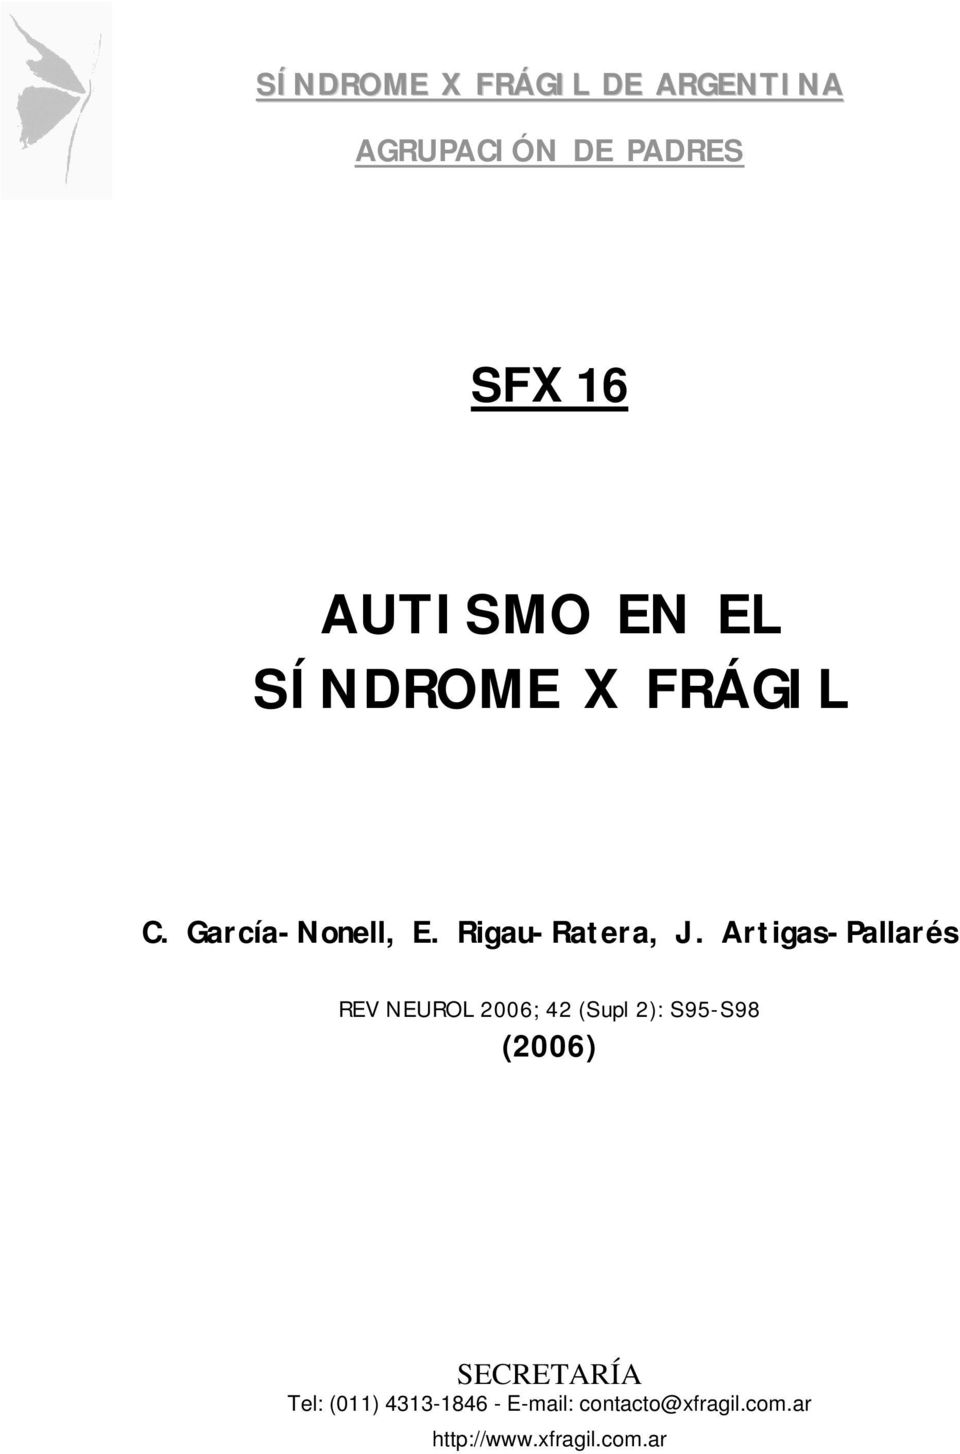 Artigas-Pallarés REV NEUROL 2006; 42 (Supl 2): S95-S98 (2006)